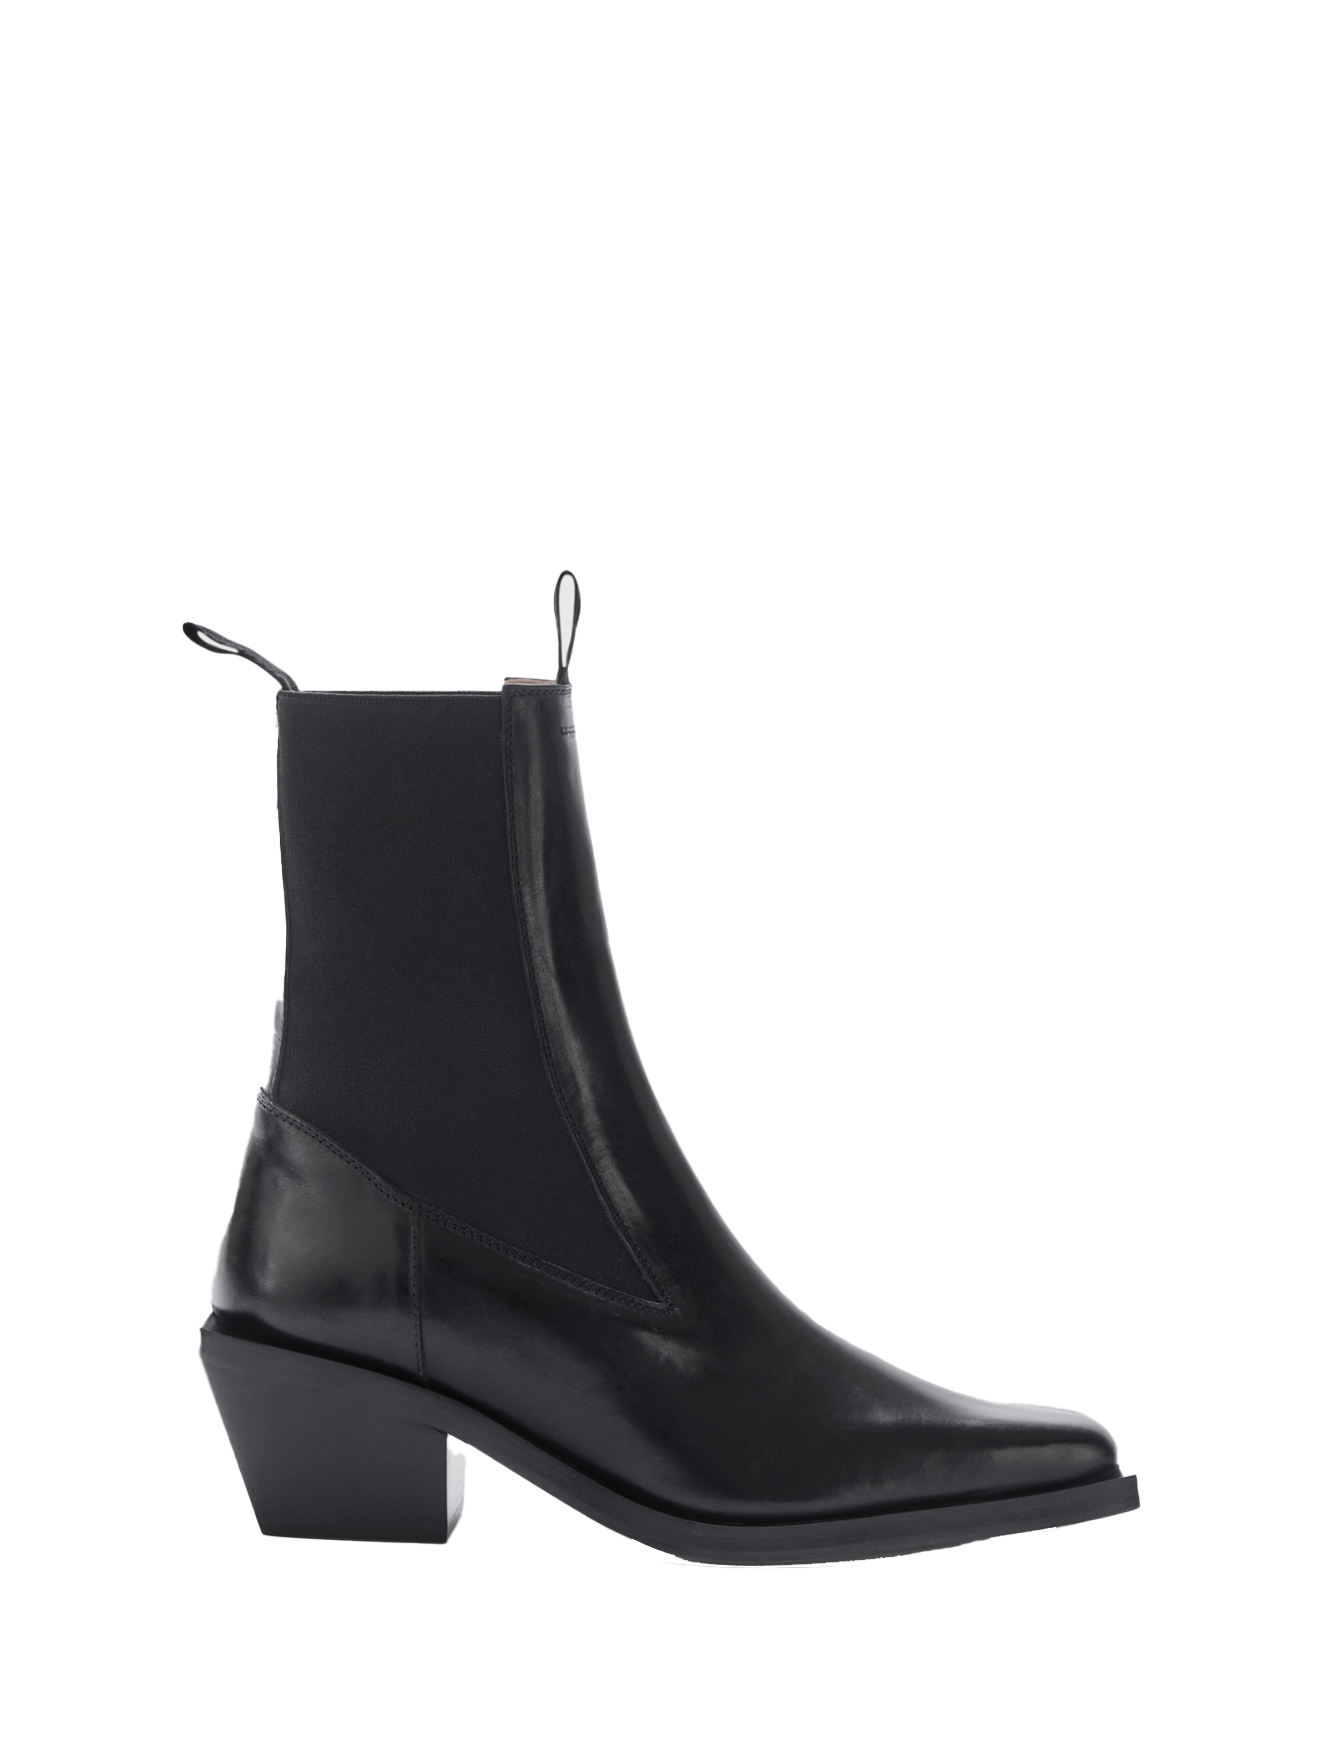 Apollosa black vacchetta boots, black